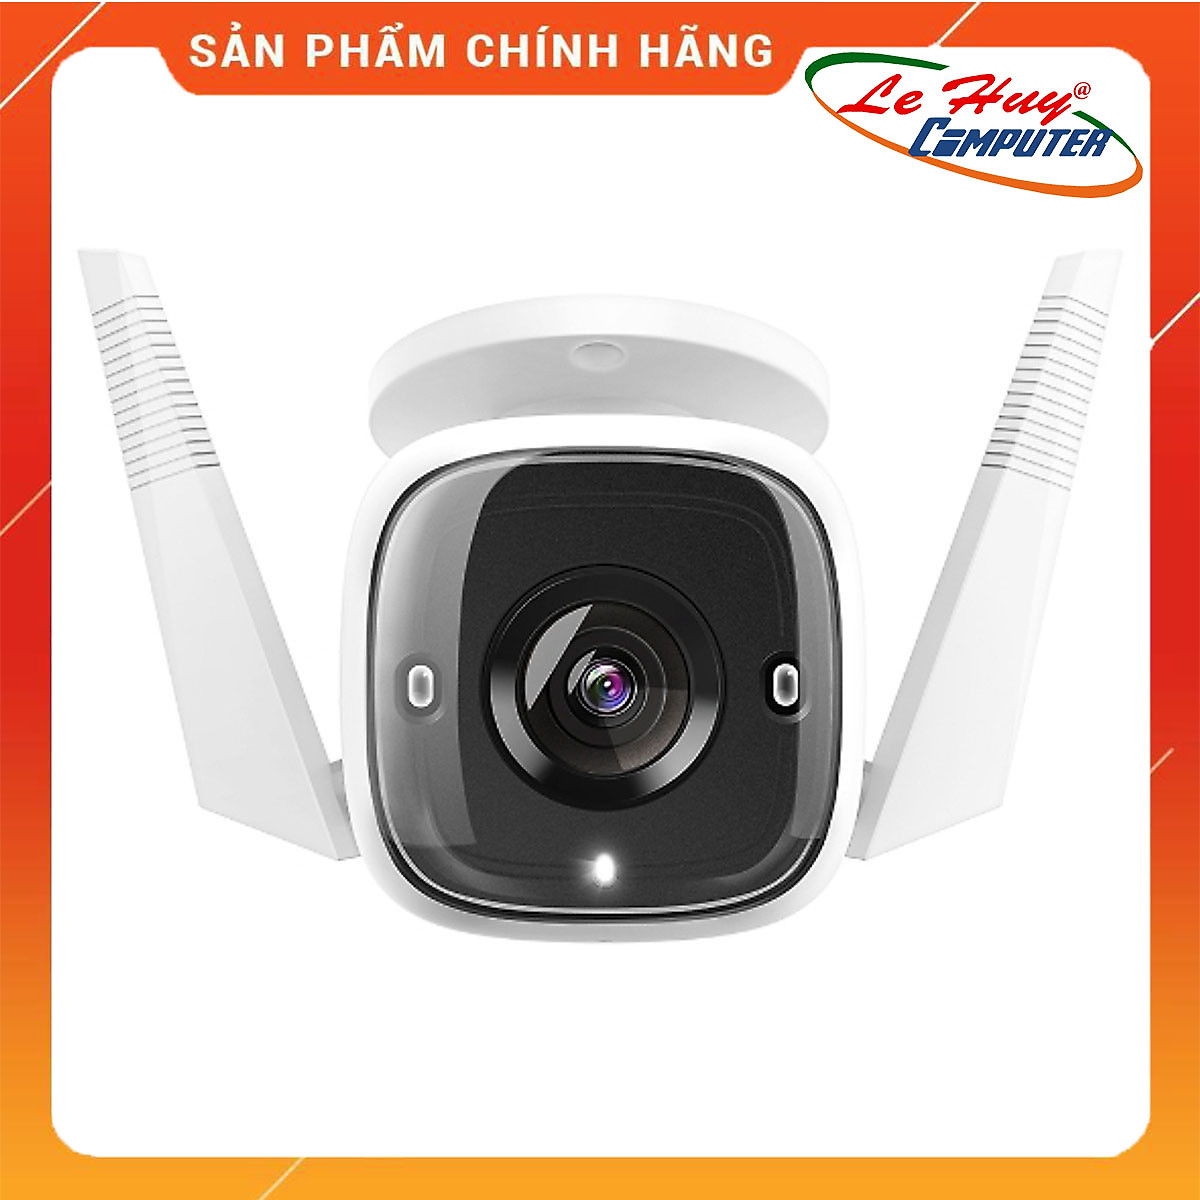 Camera Wifi TP-Link Tapo C310 3MP An Ninh Ngoài Trời - Hàng Chính Hãng